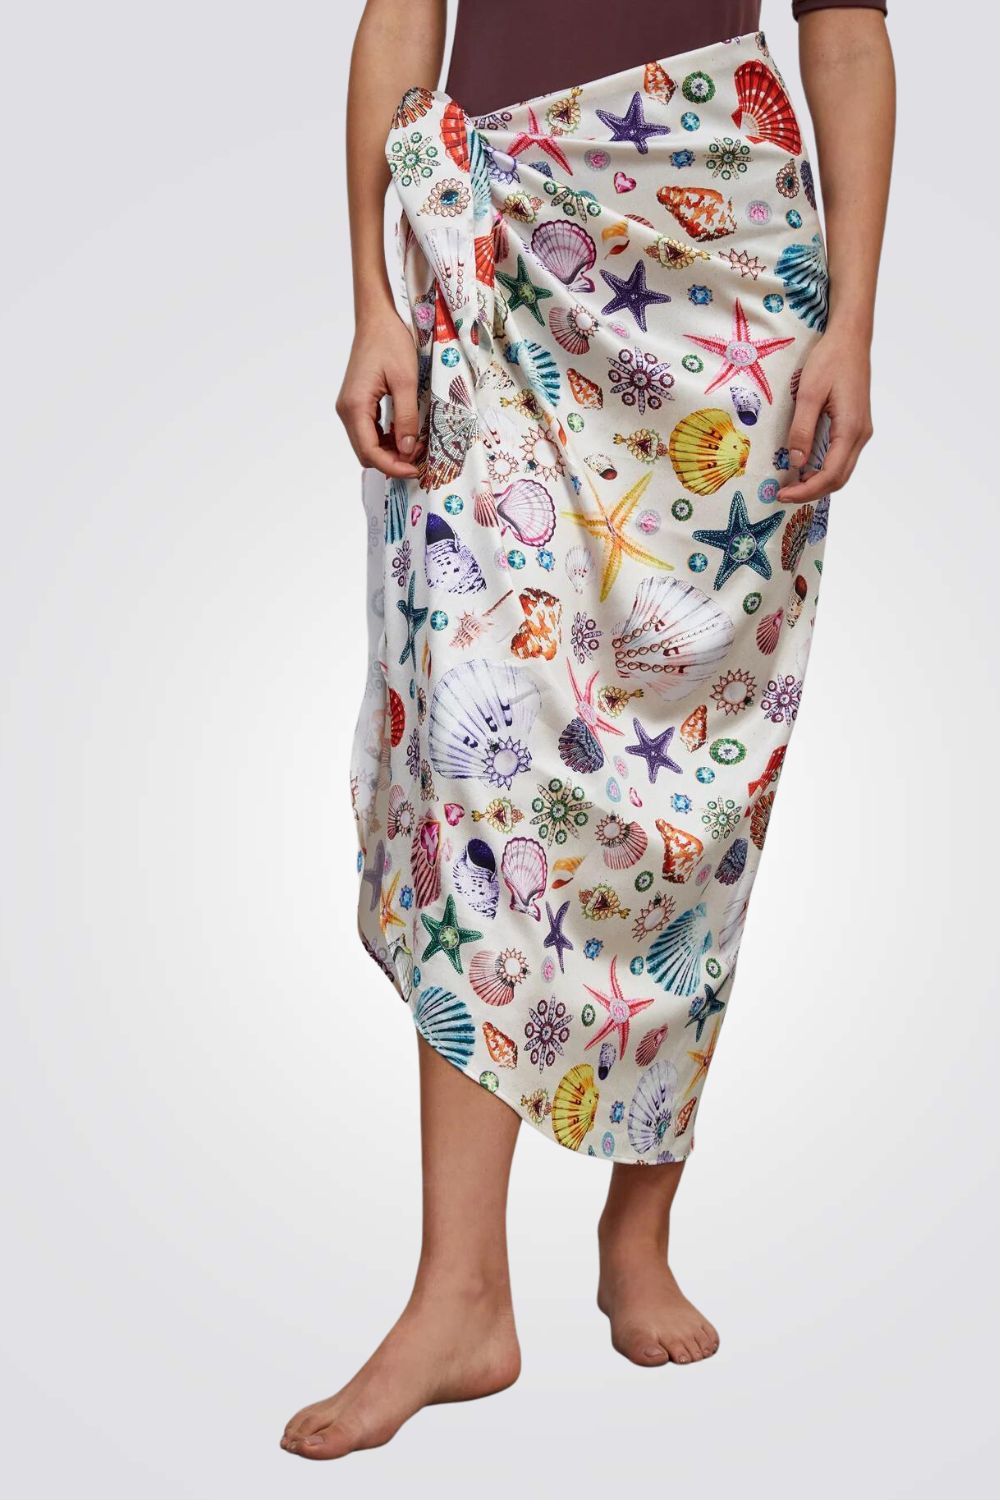 חצאית פריאו לנשים בהדפס צדפים